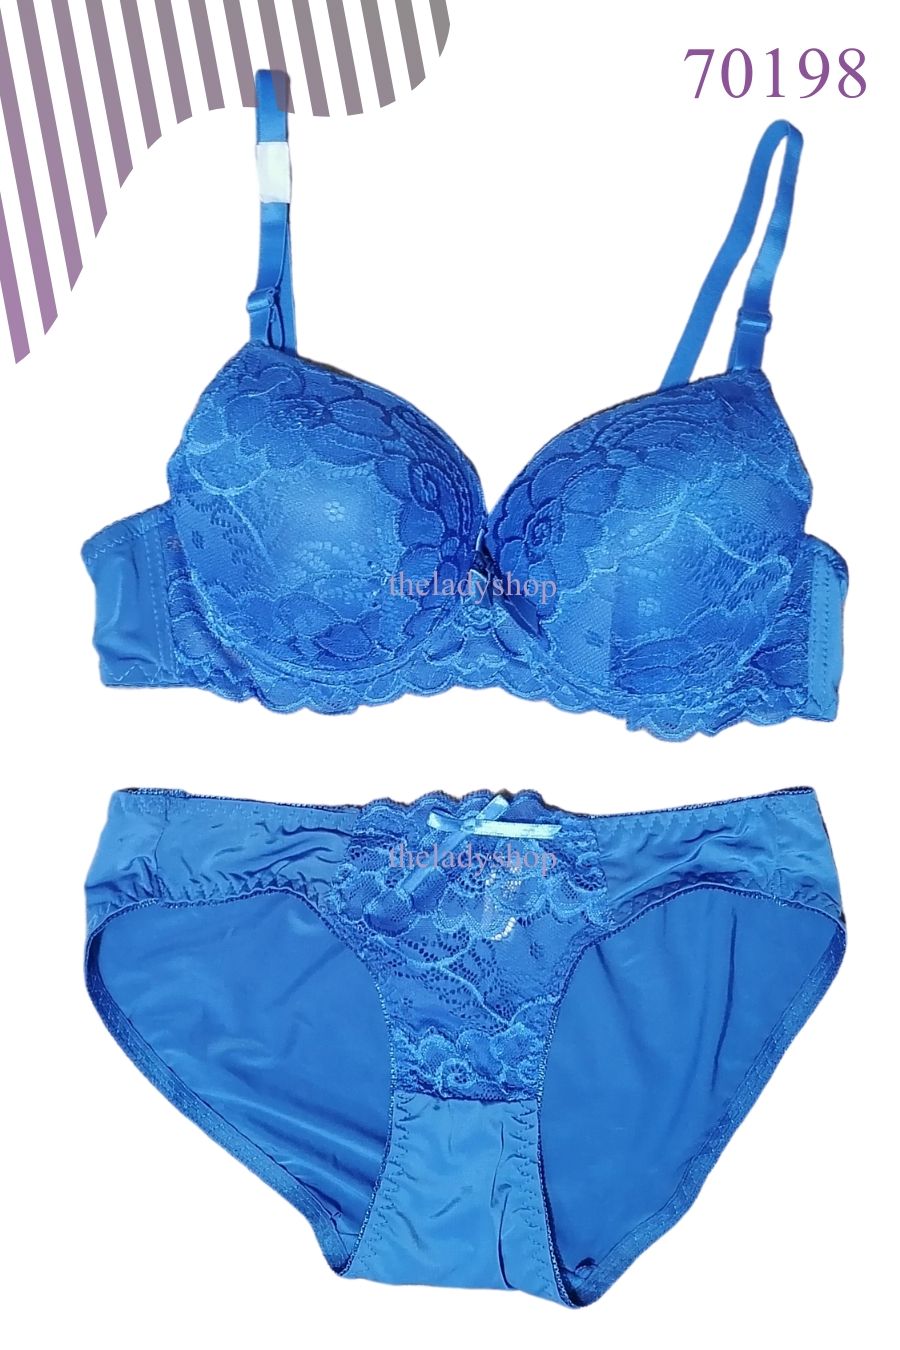 2pc fancy lace on top bra & panty set - Blue - Buy Bra, Nightwears ,  Panties in Pakistan